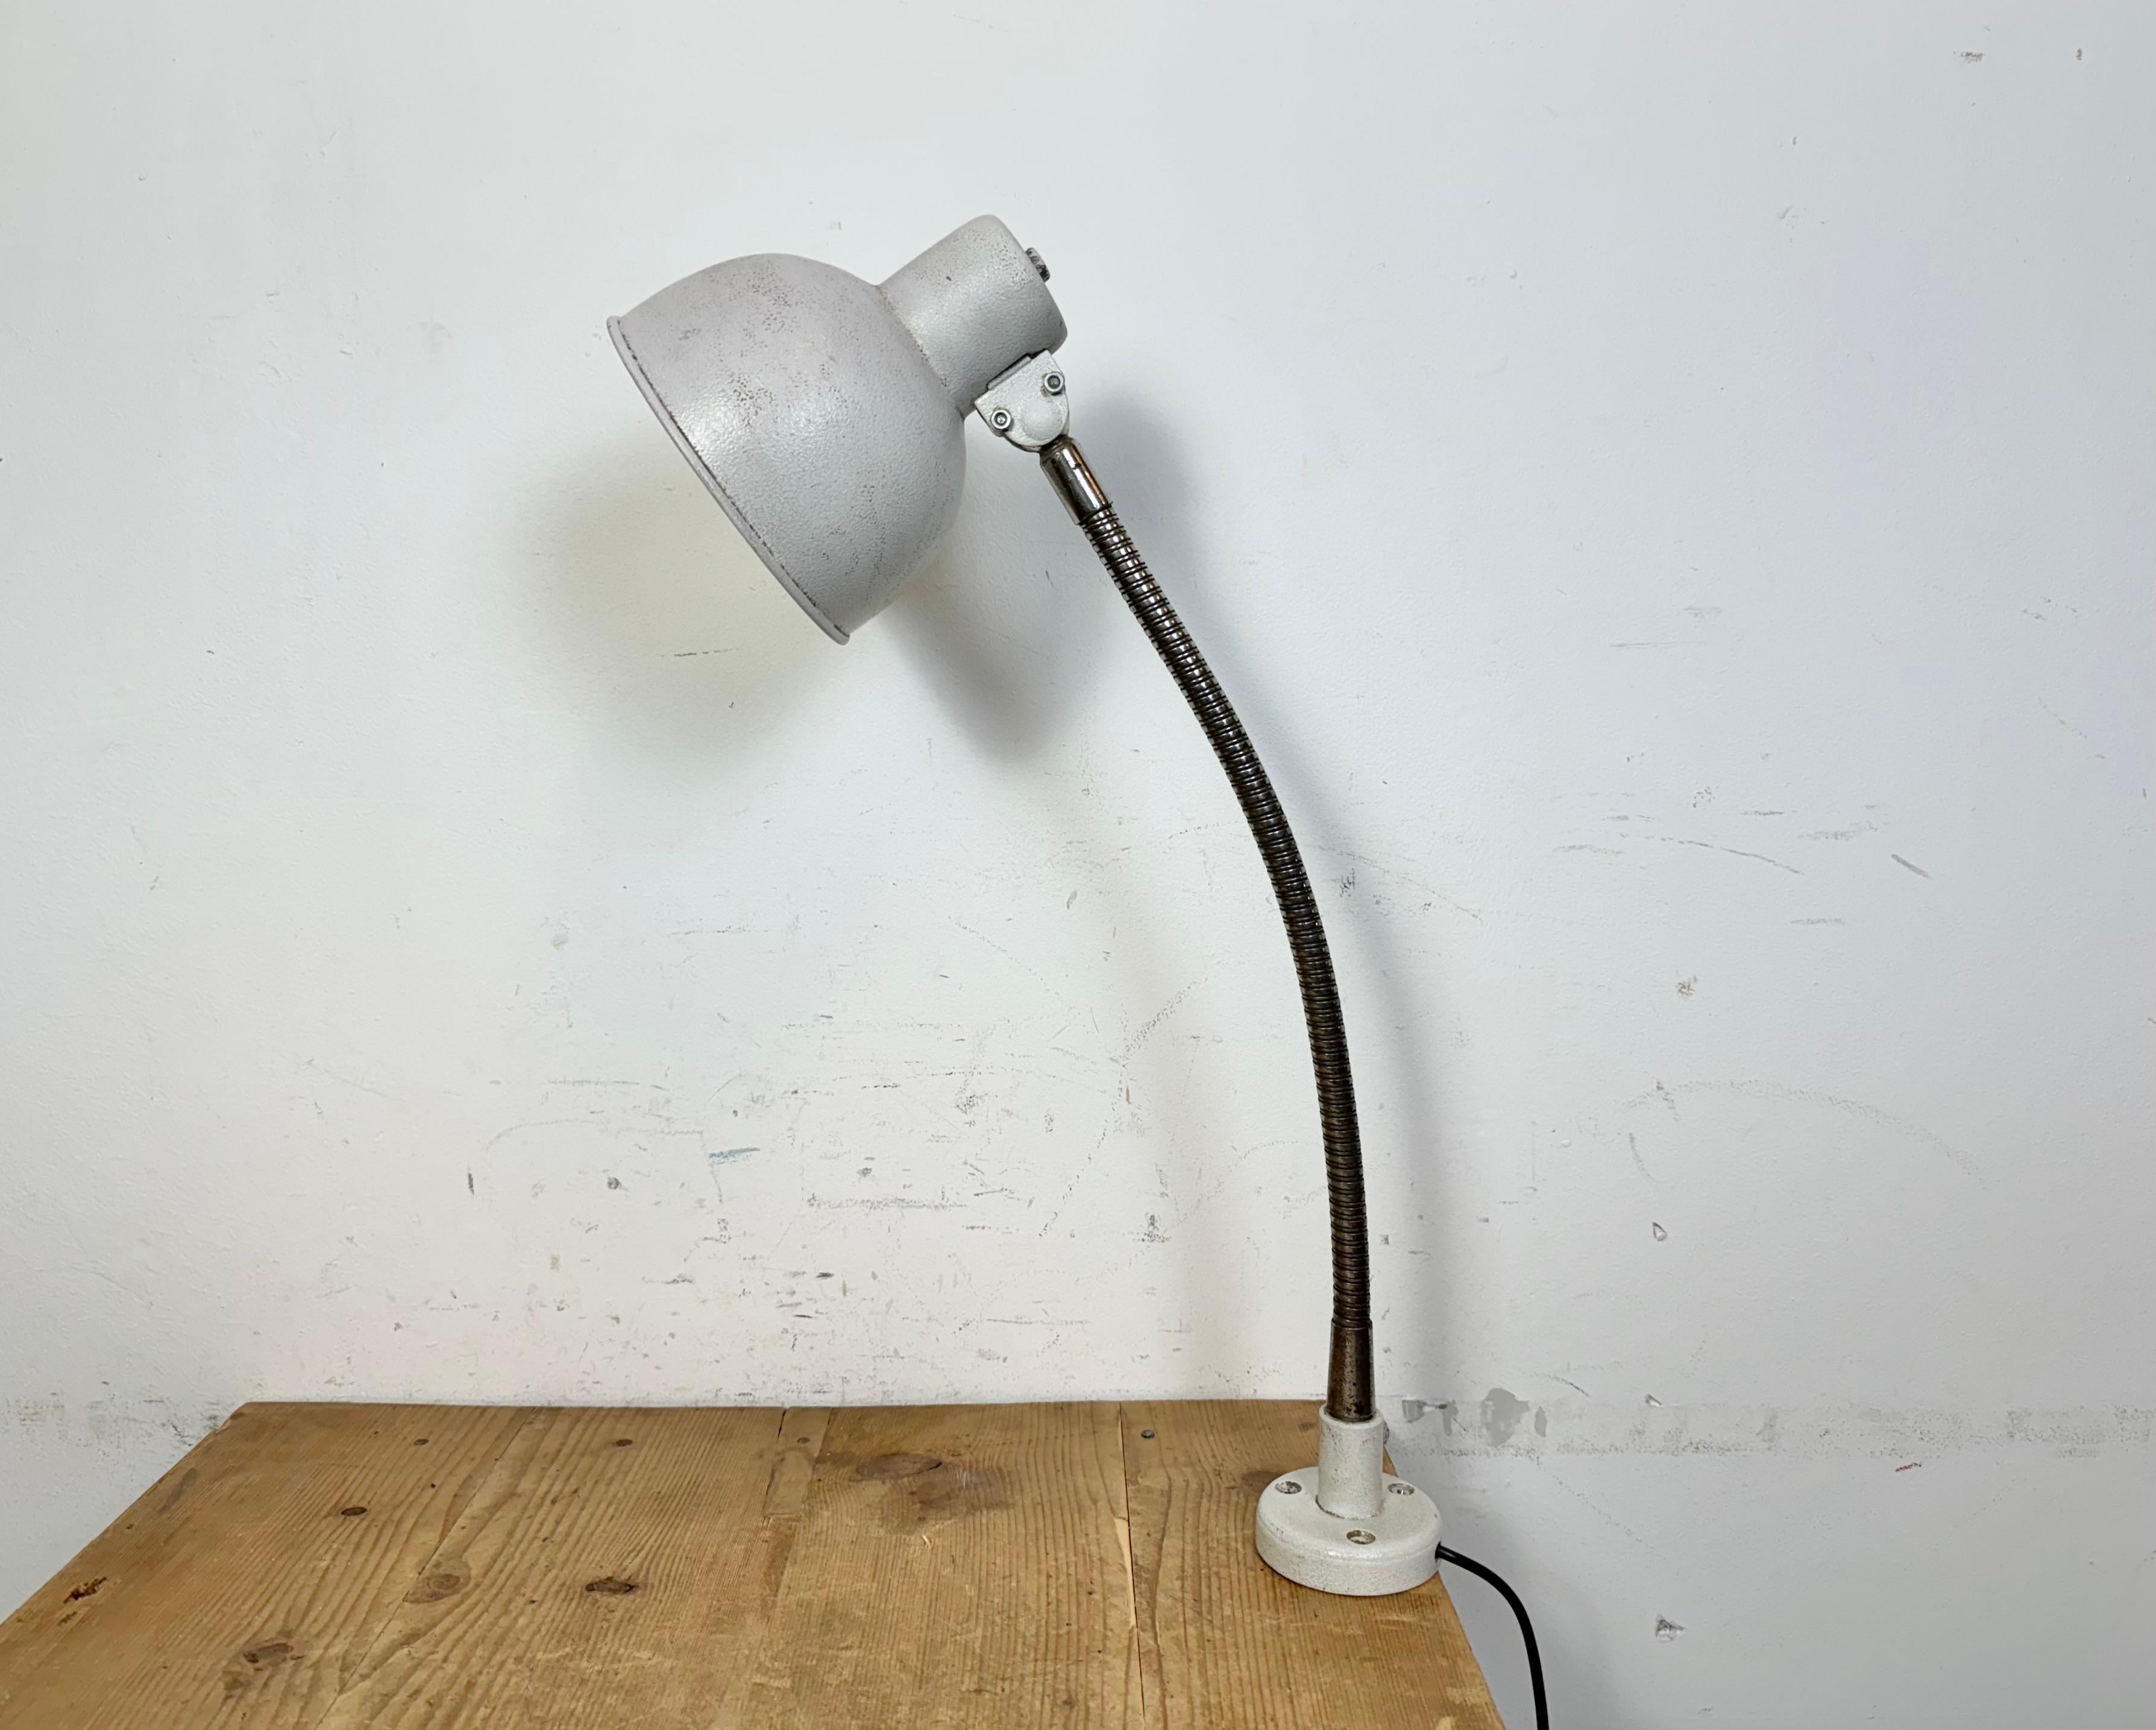 Lampe d'atelier industrielle réglable fabriquée dans l'ancienne Tchécoslovaquie dans les années 1960, avec une base et un abat-jour en fer gris et un col de cygne chromé. La douille d'origine nécessite des ampoules standard E27/E26. Un nouveau